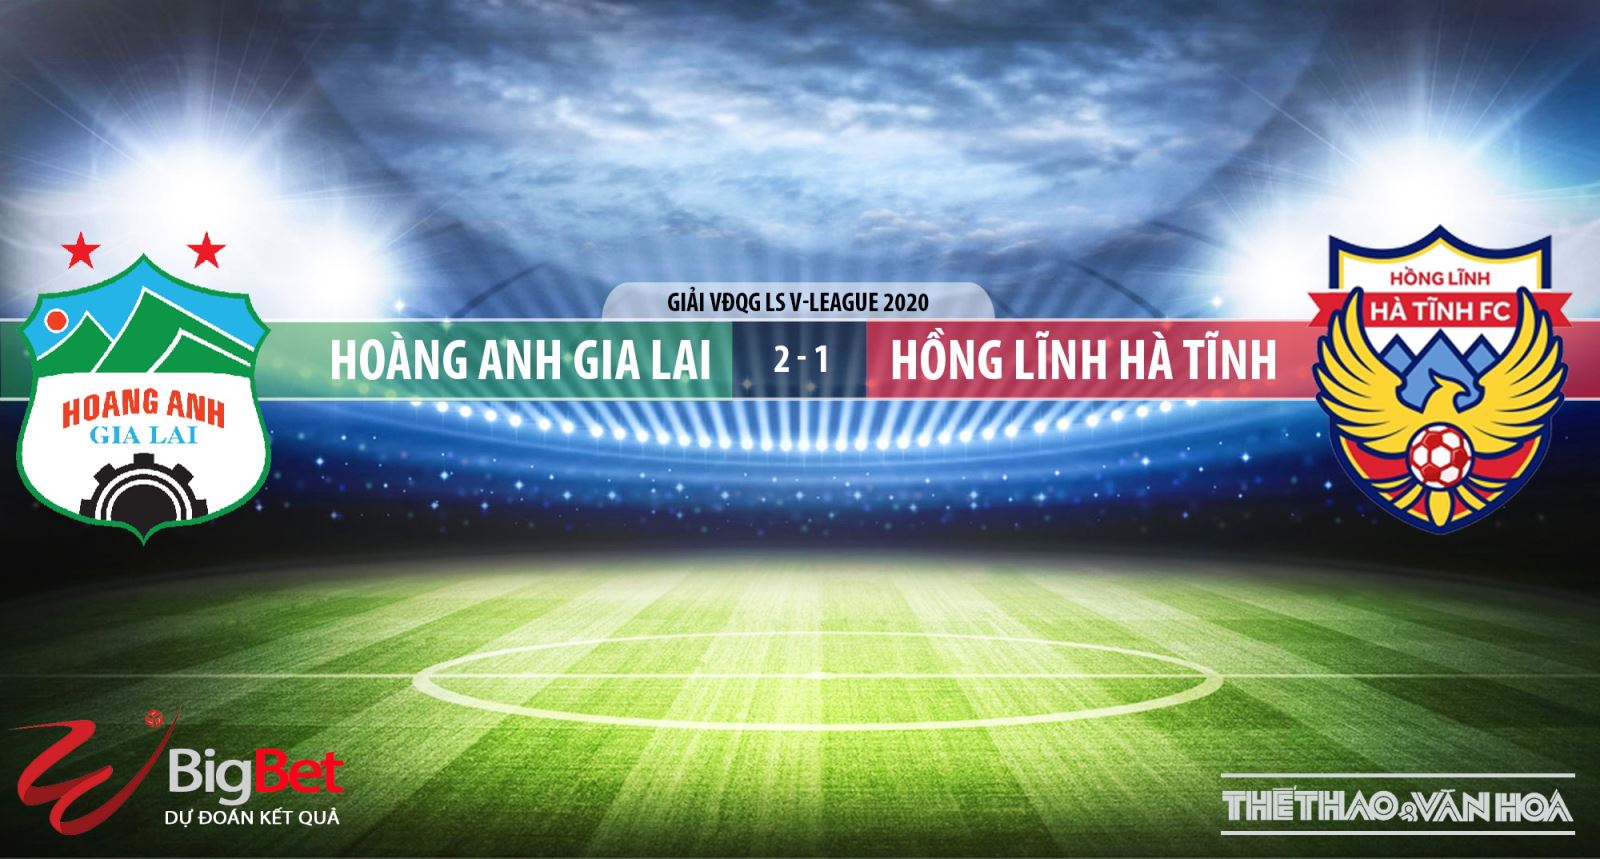 Hoàng Anh Gia Lai, Hồng Lĩnh Hà Tĩnh, HAGL, Hà Tĩnh, nhận định bóng đá, kèo bóng đá, trực tiếp bóng đá, lịch thi đấu bóng đá, V-League